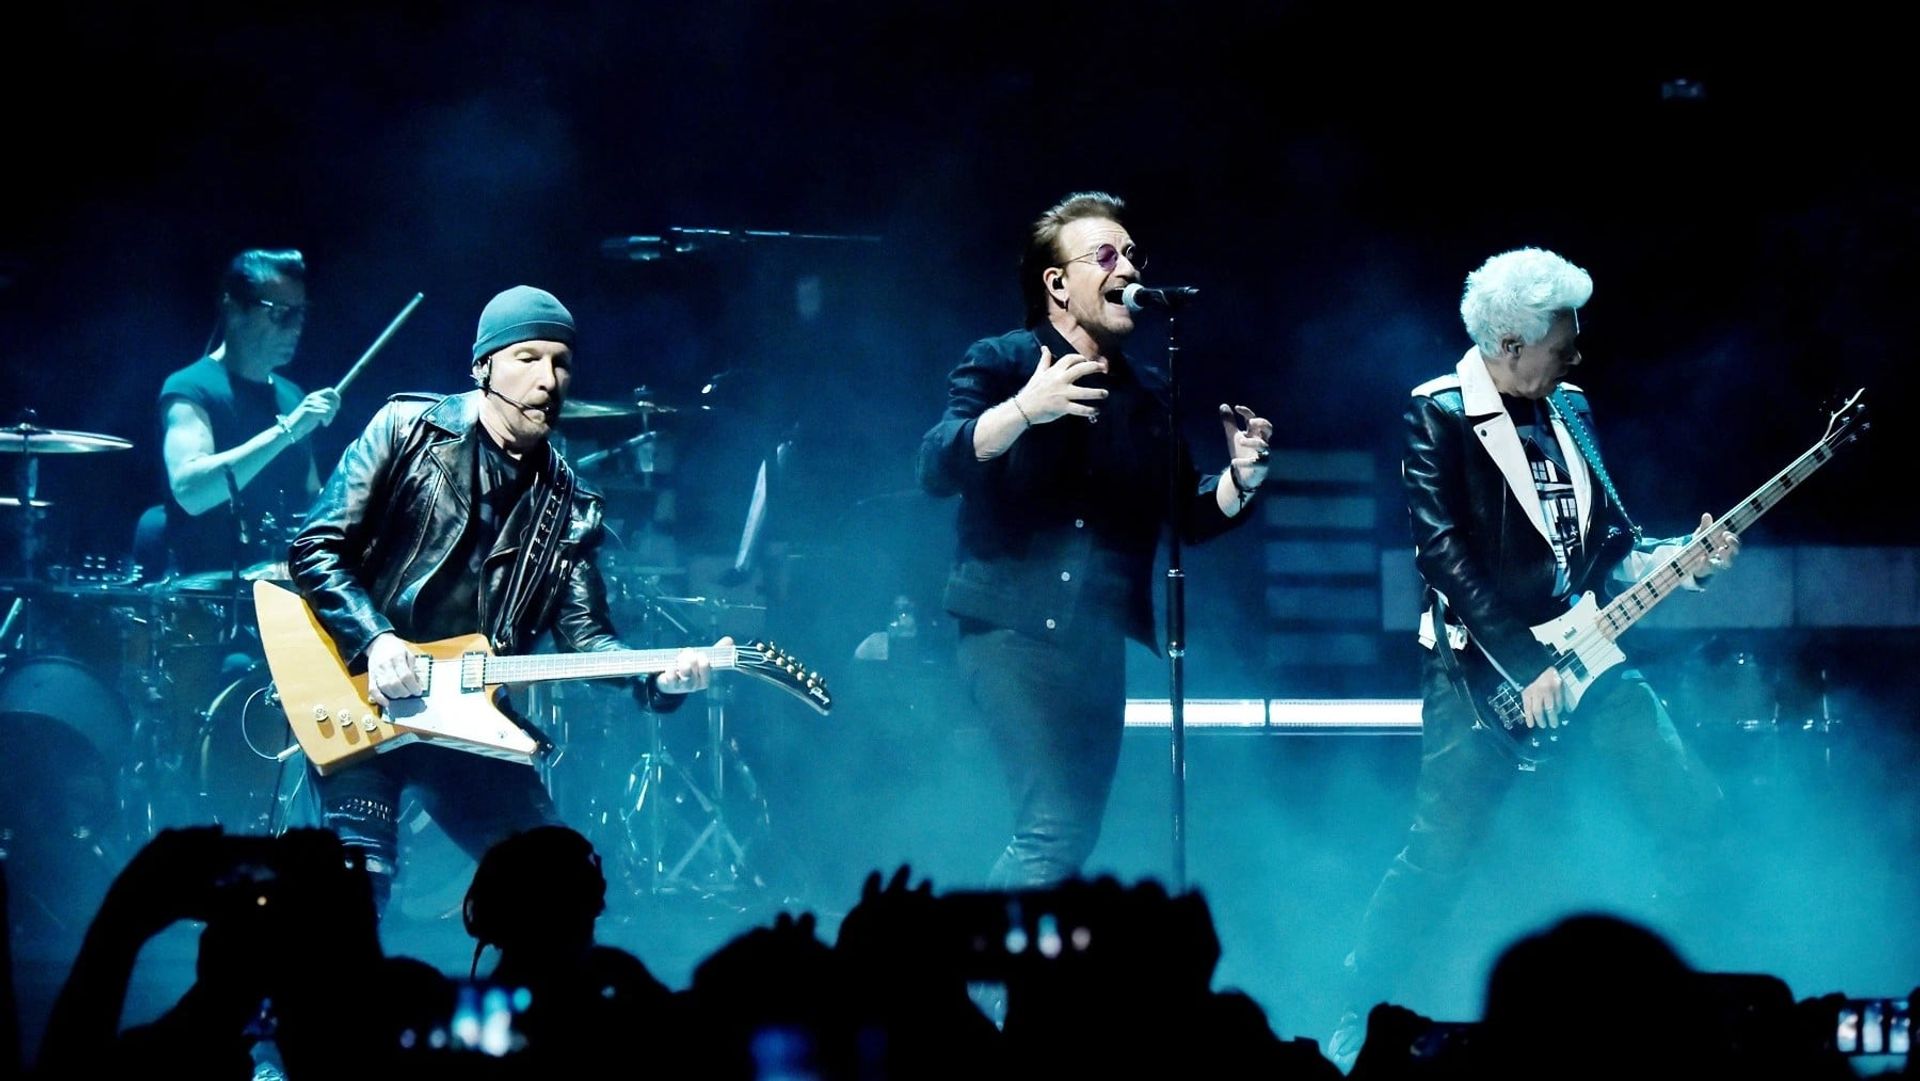 U2: eXPERIENCE - Live in Berlin Backdrop